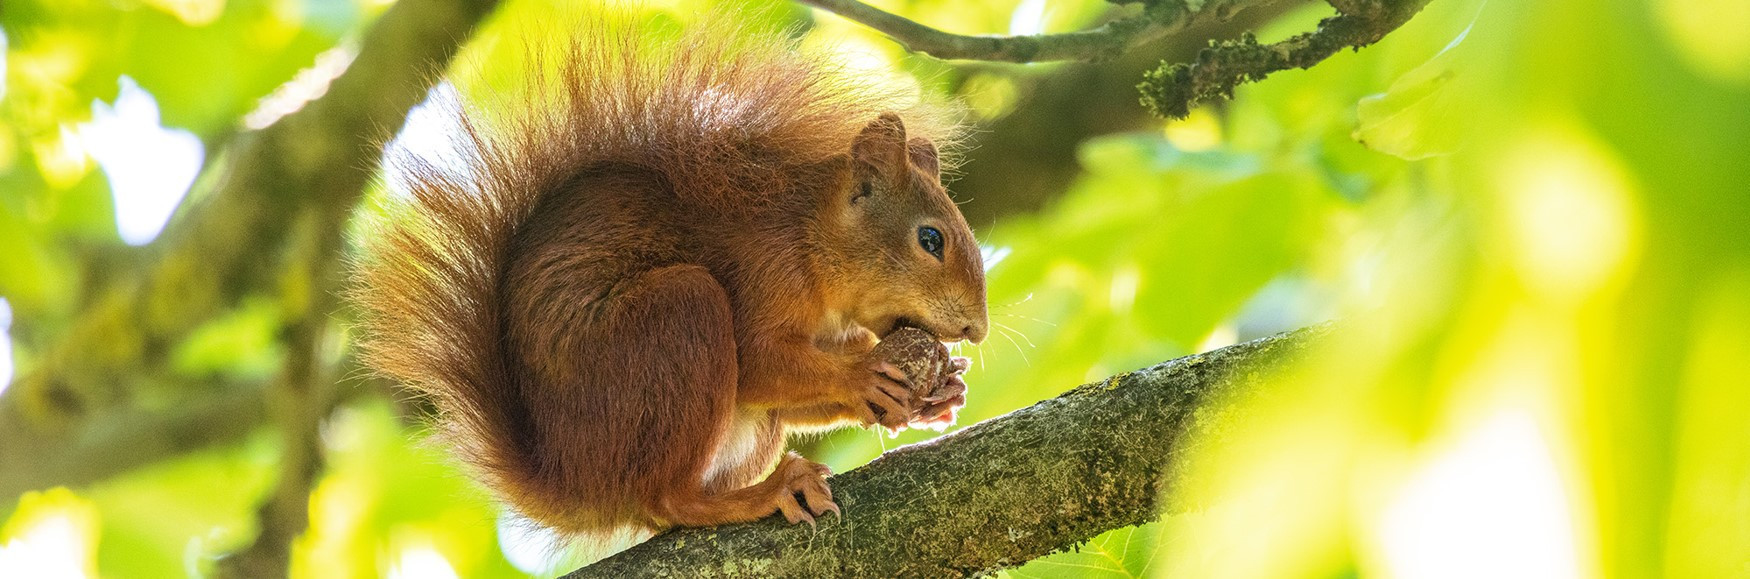 Eichhörnchen beim Fressen auf einem Ast